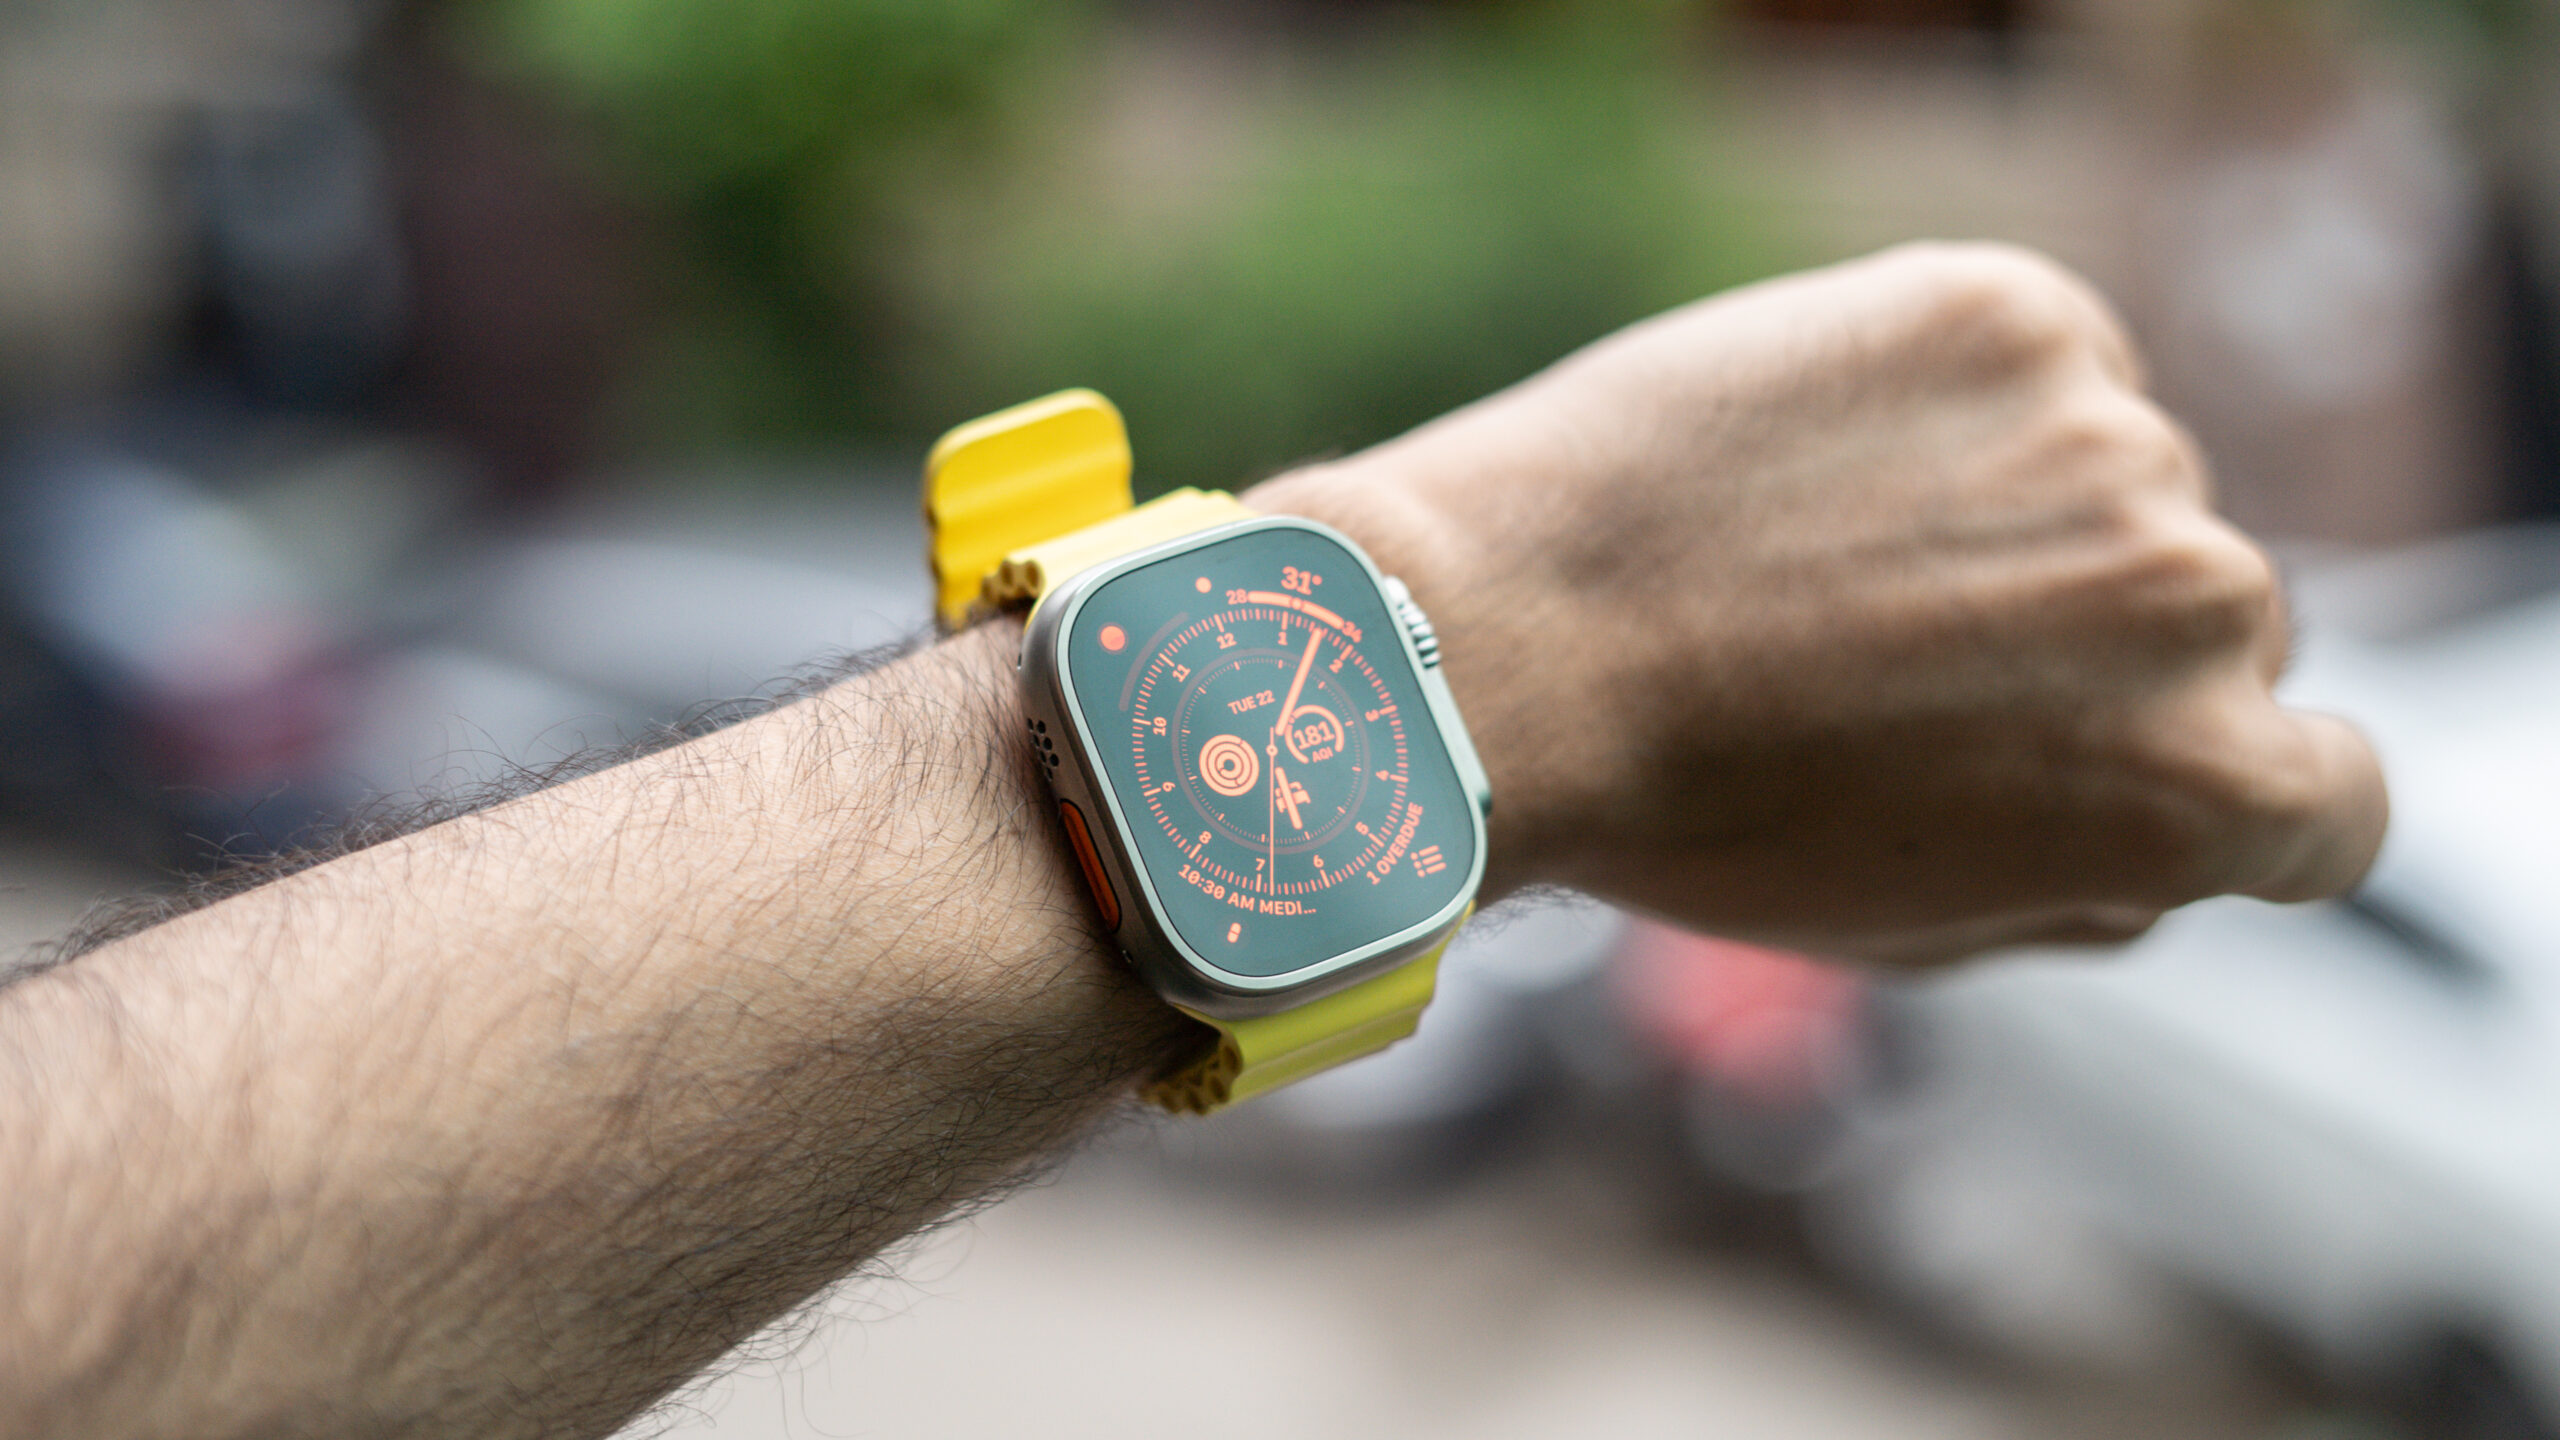 Apple Watch Ultra with Wayfinder watchface on wrist